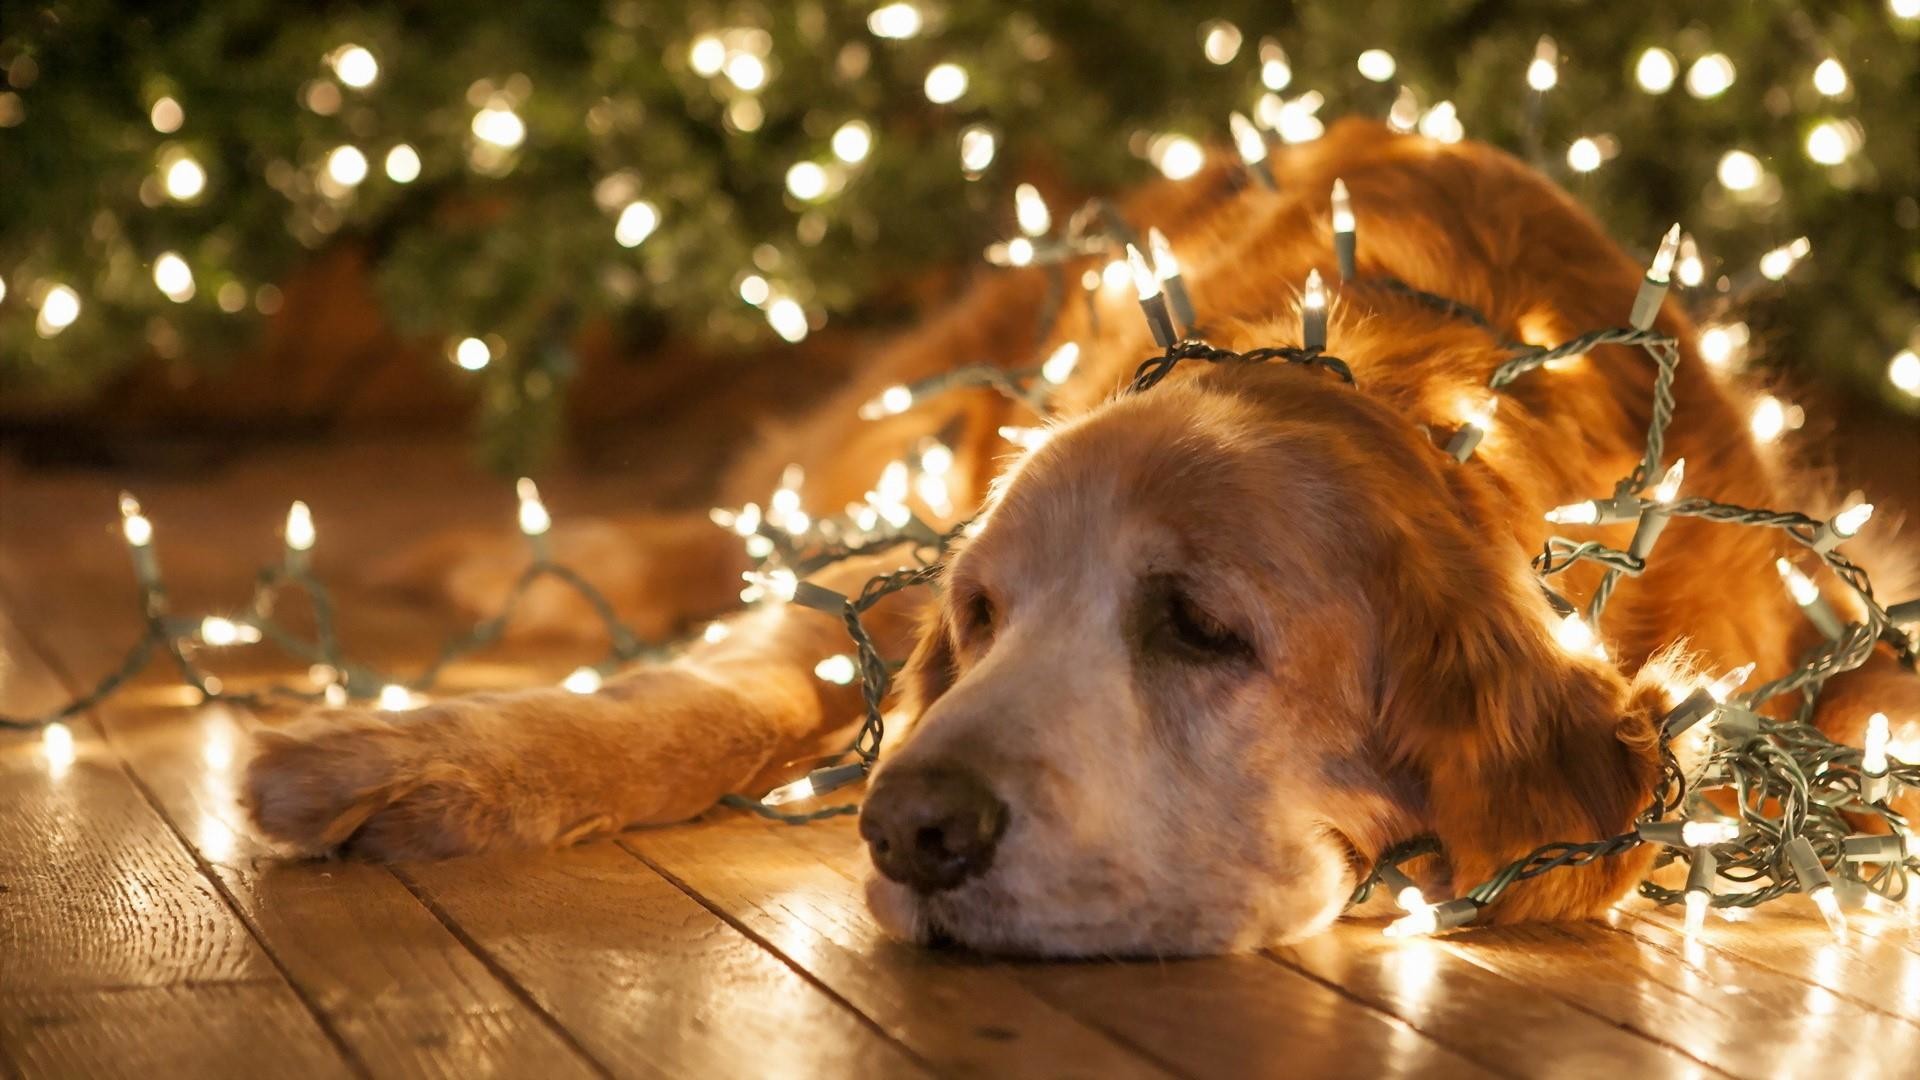 1920x1080, Golden Retriever Under The Christmas Lights - Christmas Dog Wallpaper Hd - HD Wallpaper 